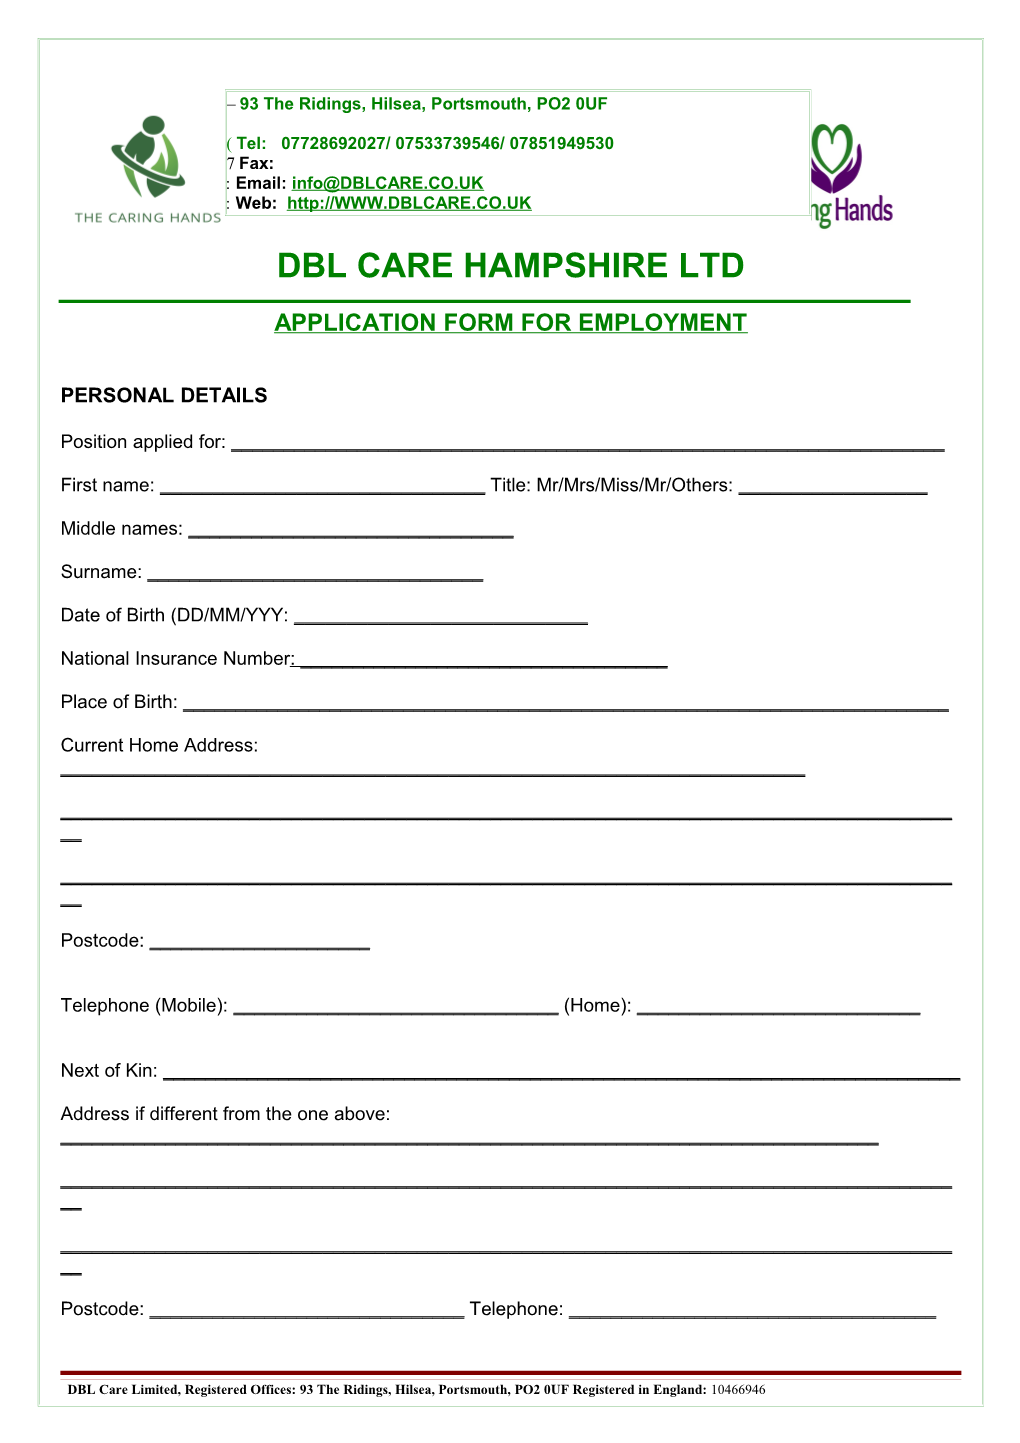 Dbl Care Hampshire Ltd